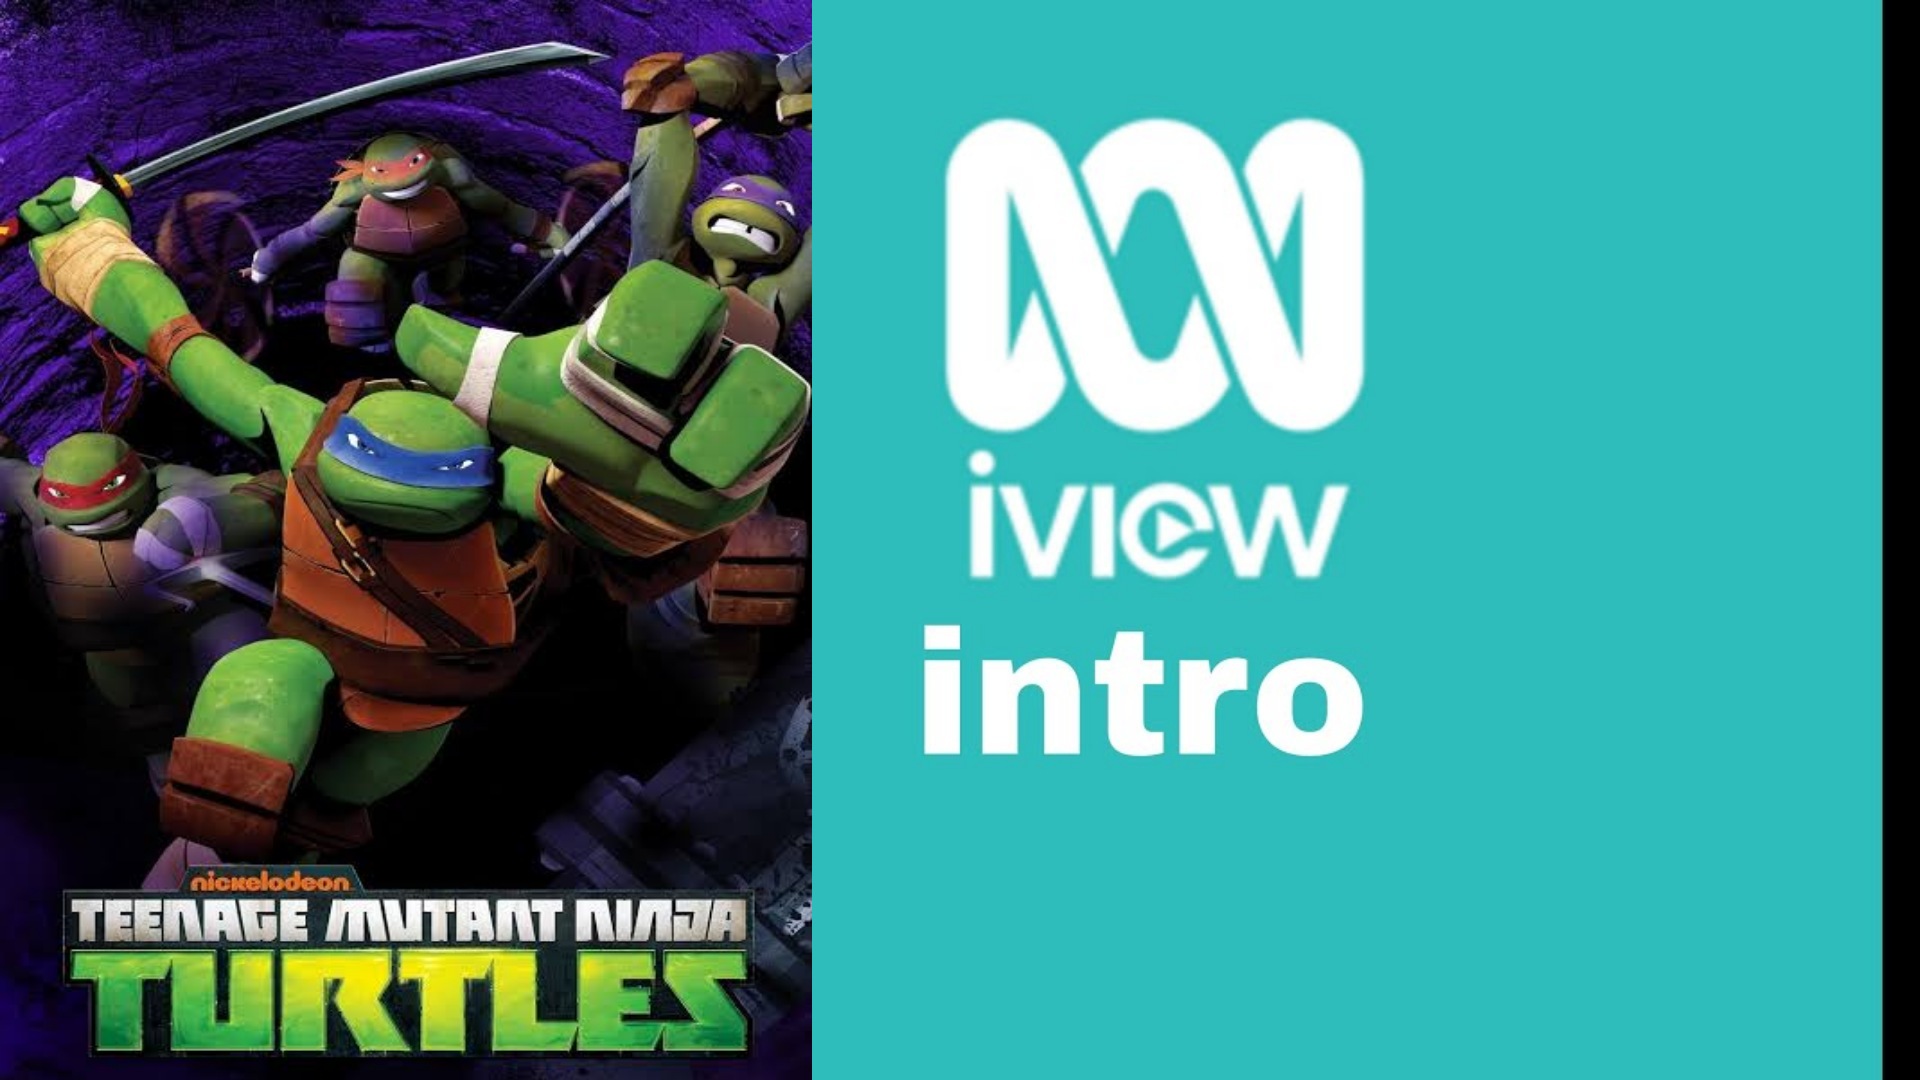 Teenage Mutant Ninja Turtles ABC iView intro